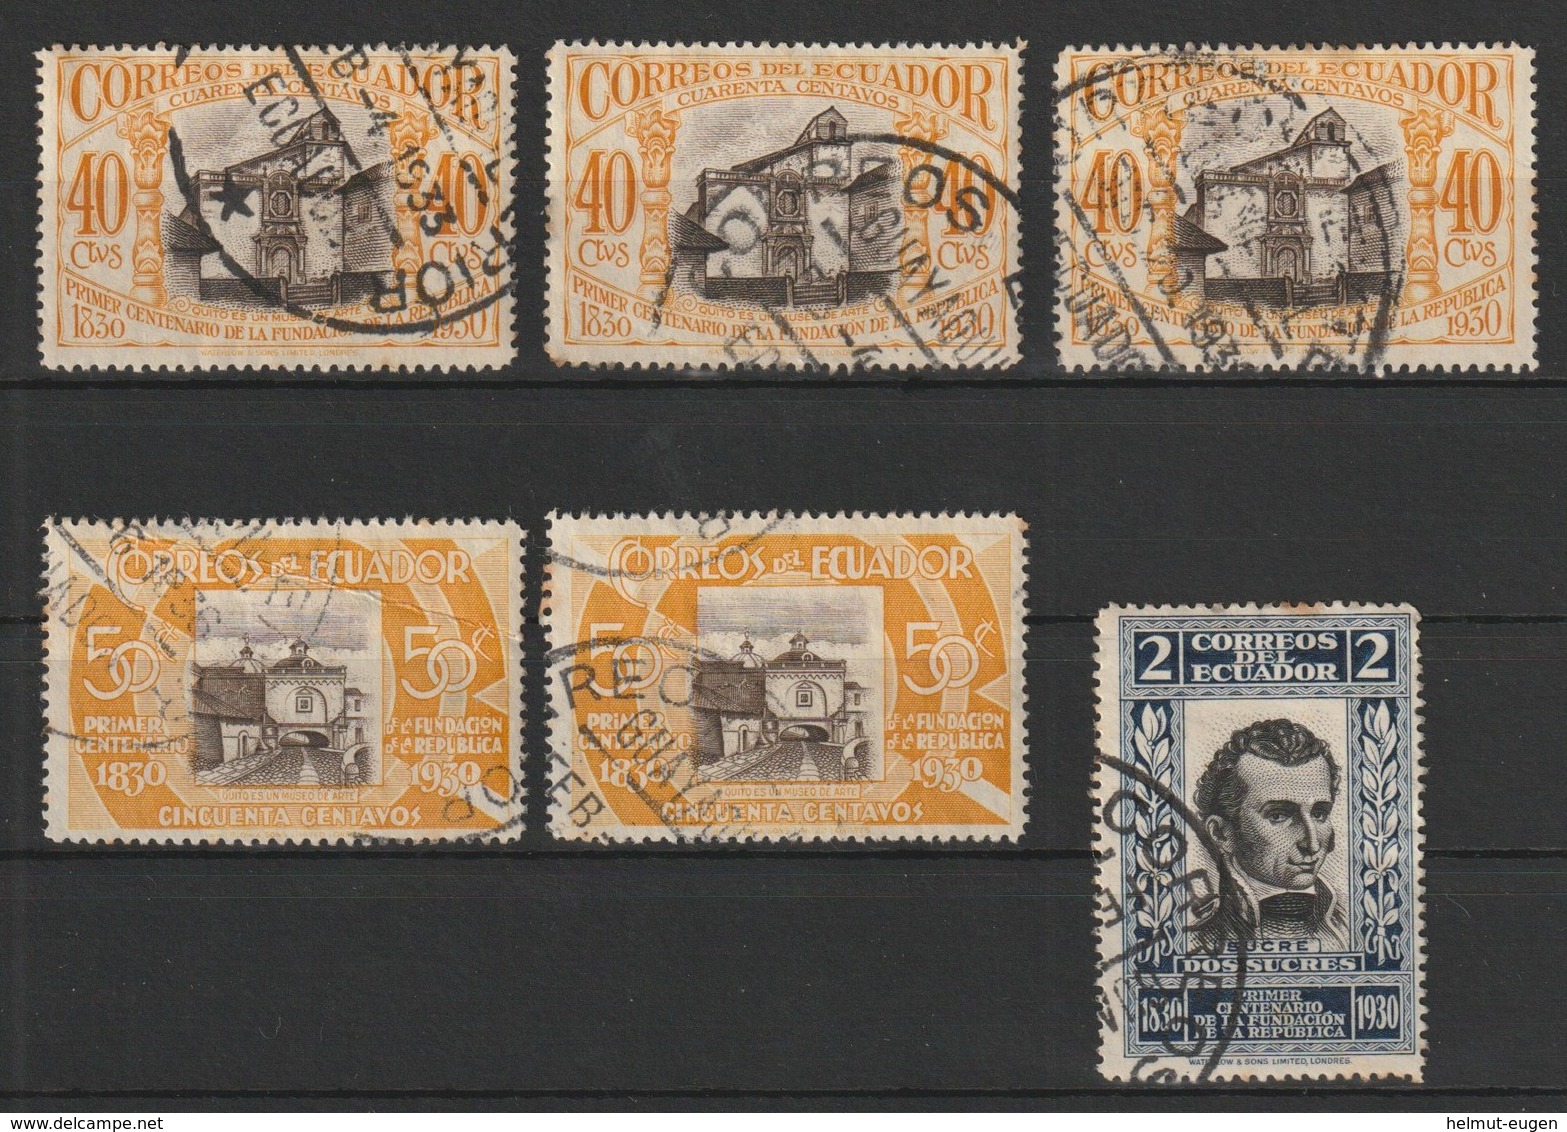 MiNr. 304, 305, 307  Ecuador / 1930, 1. Aug. 100 Jahre Republik - Ecuador